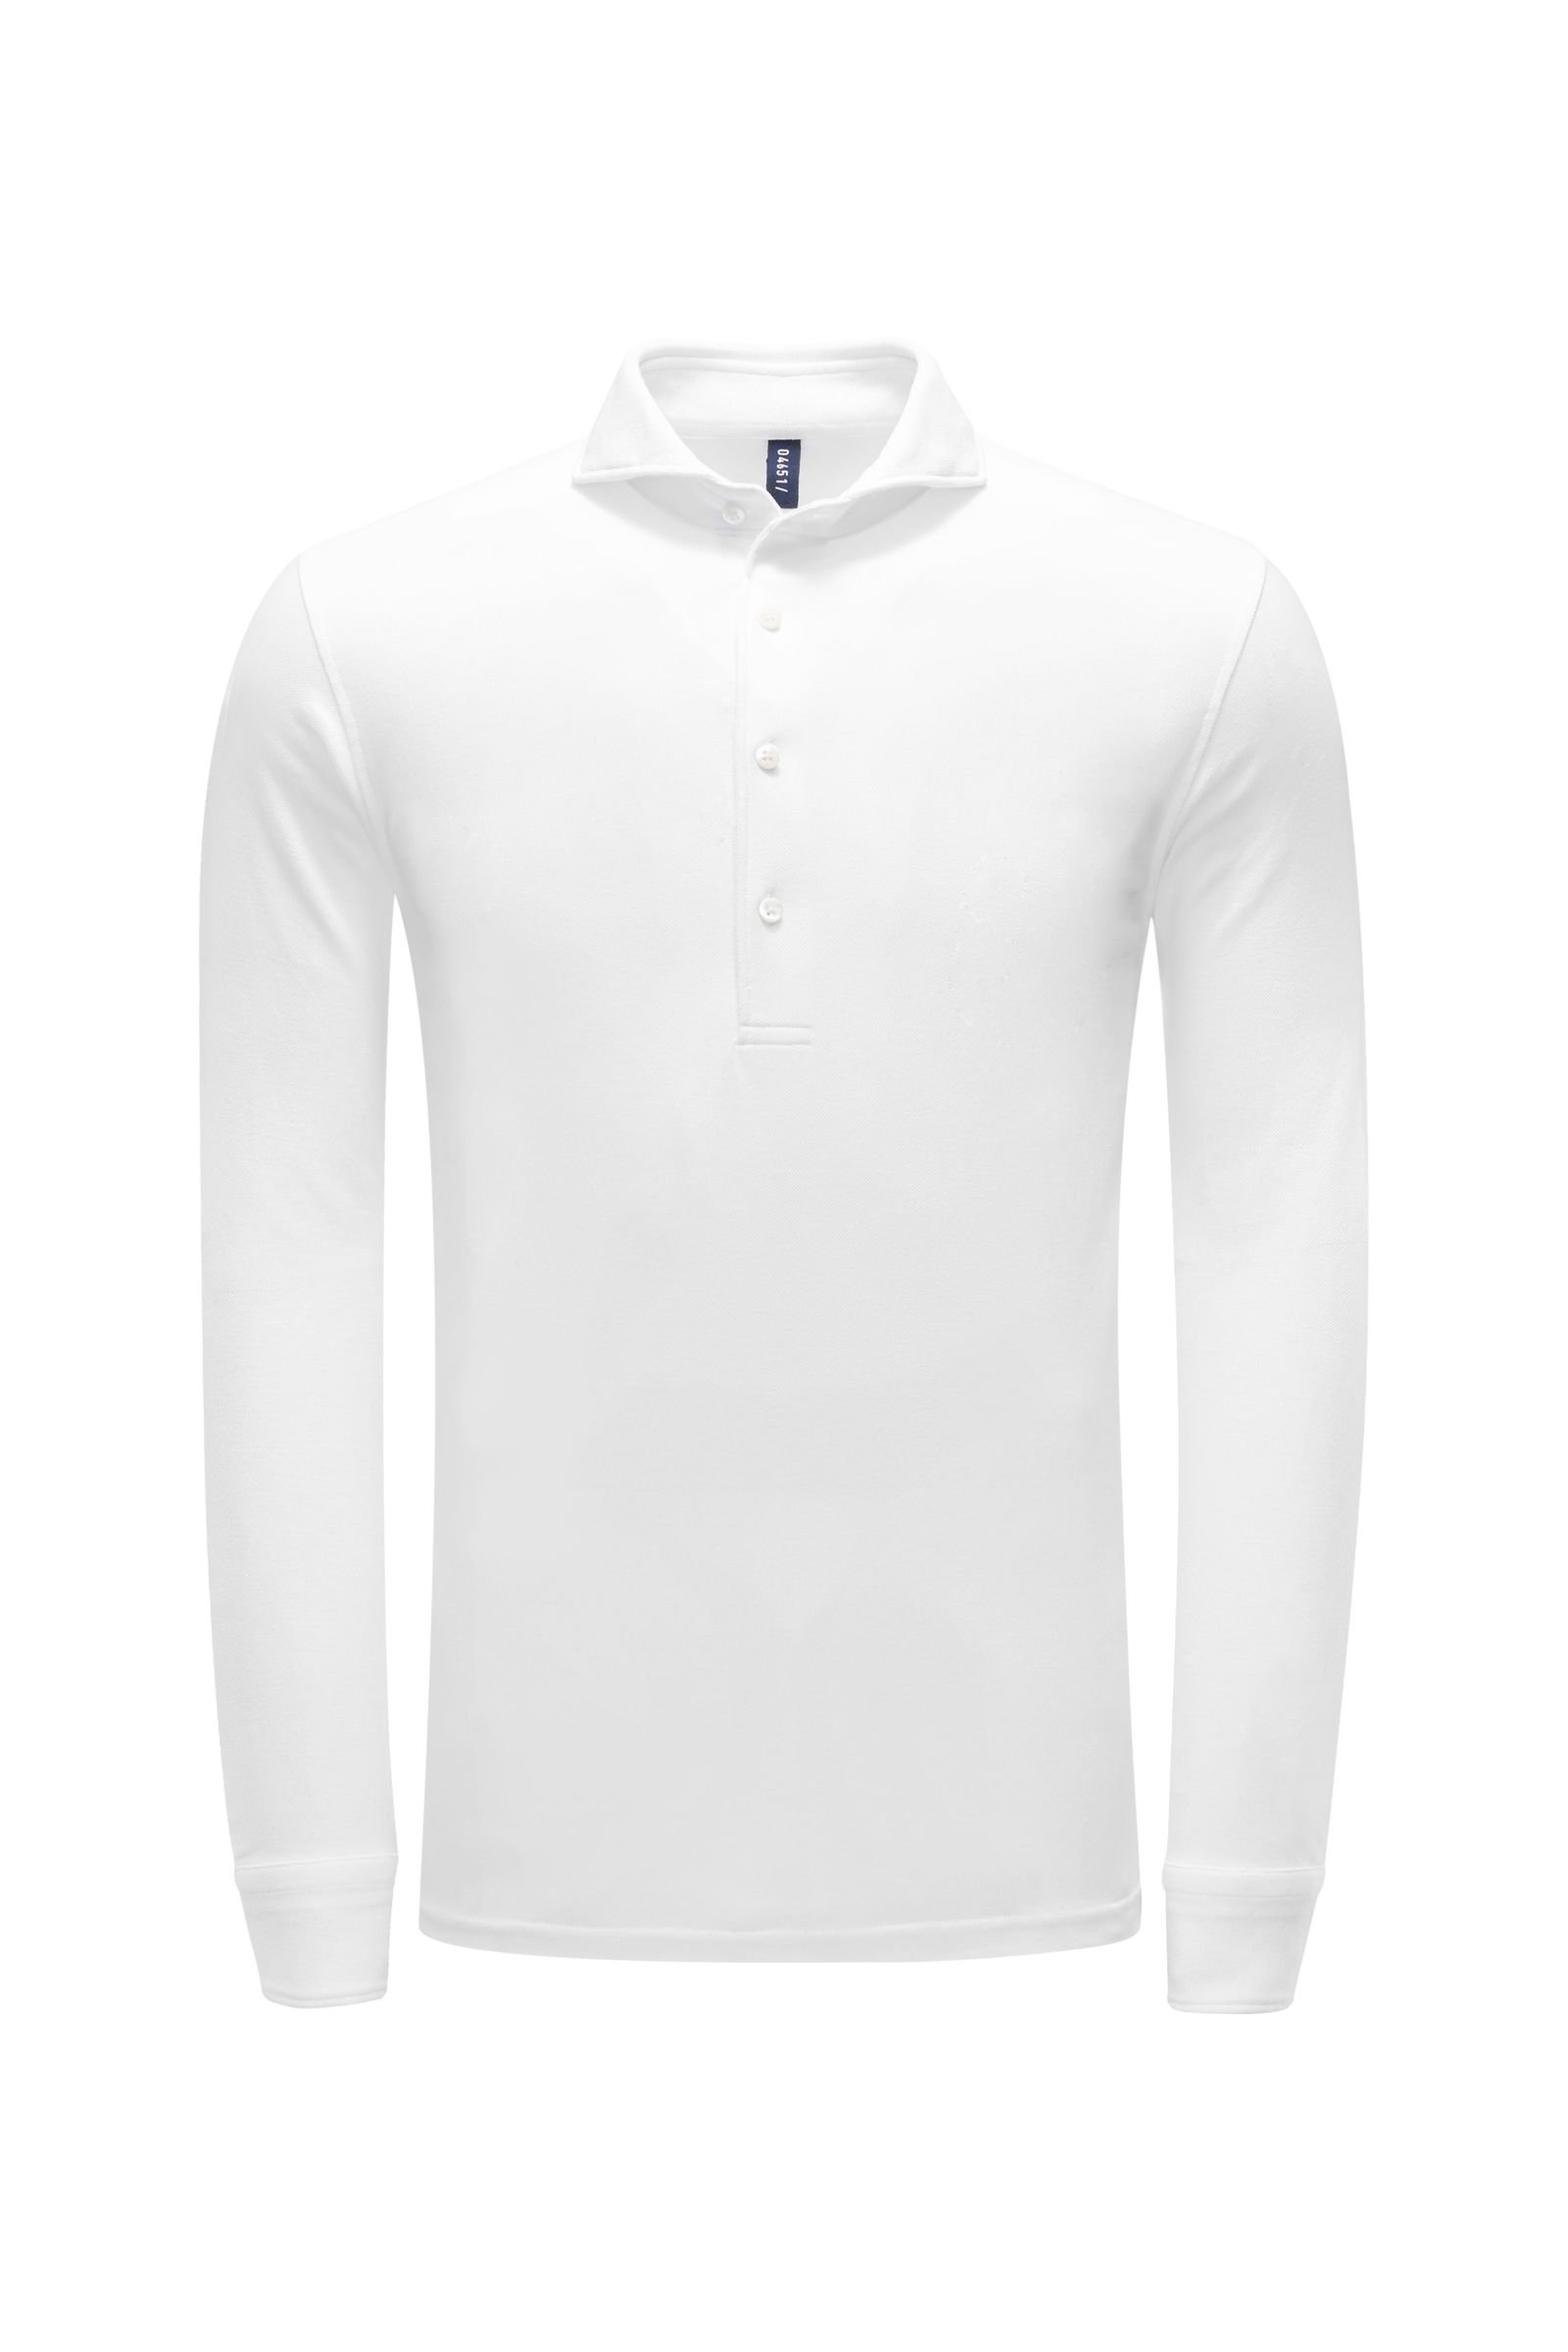 Long sleeve polo shirt white